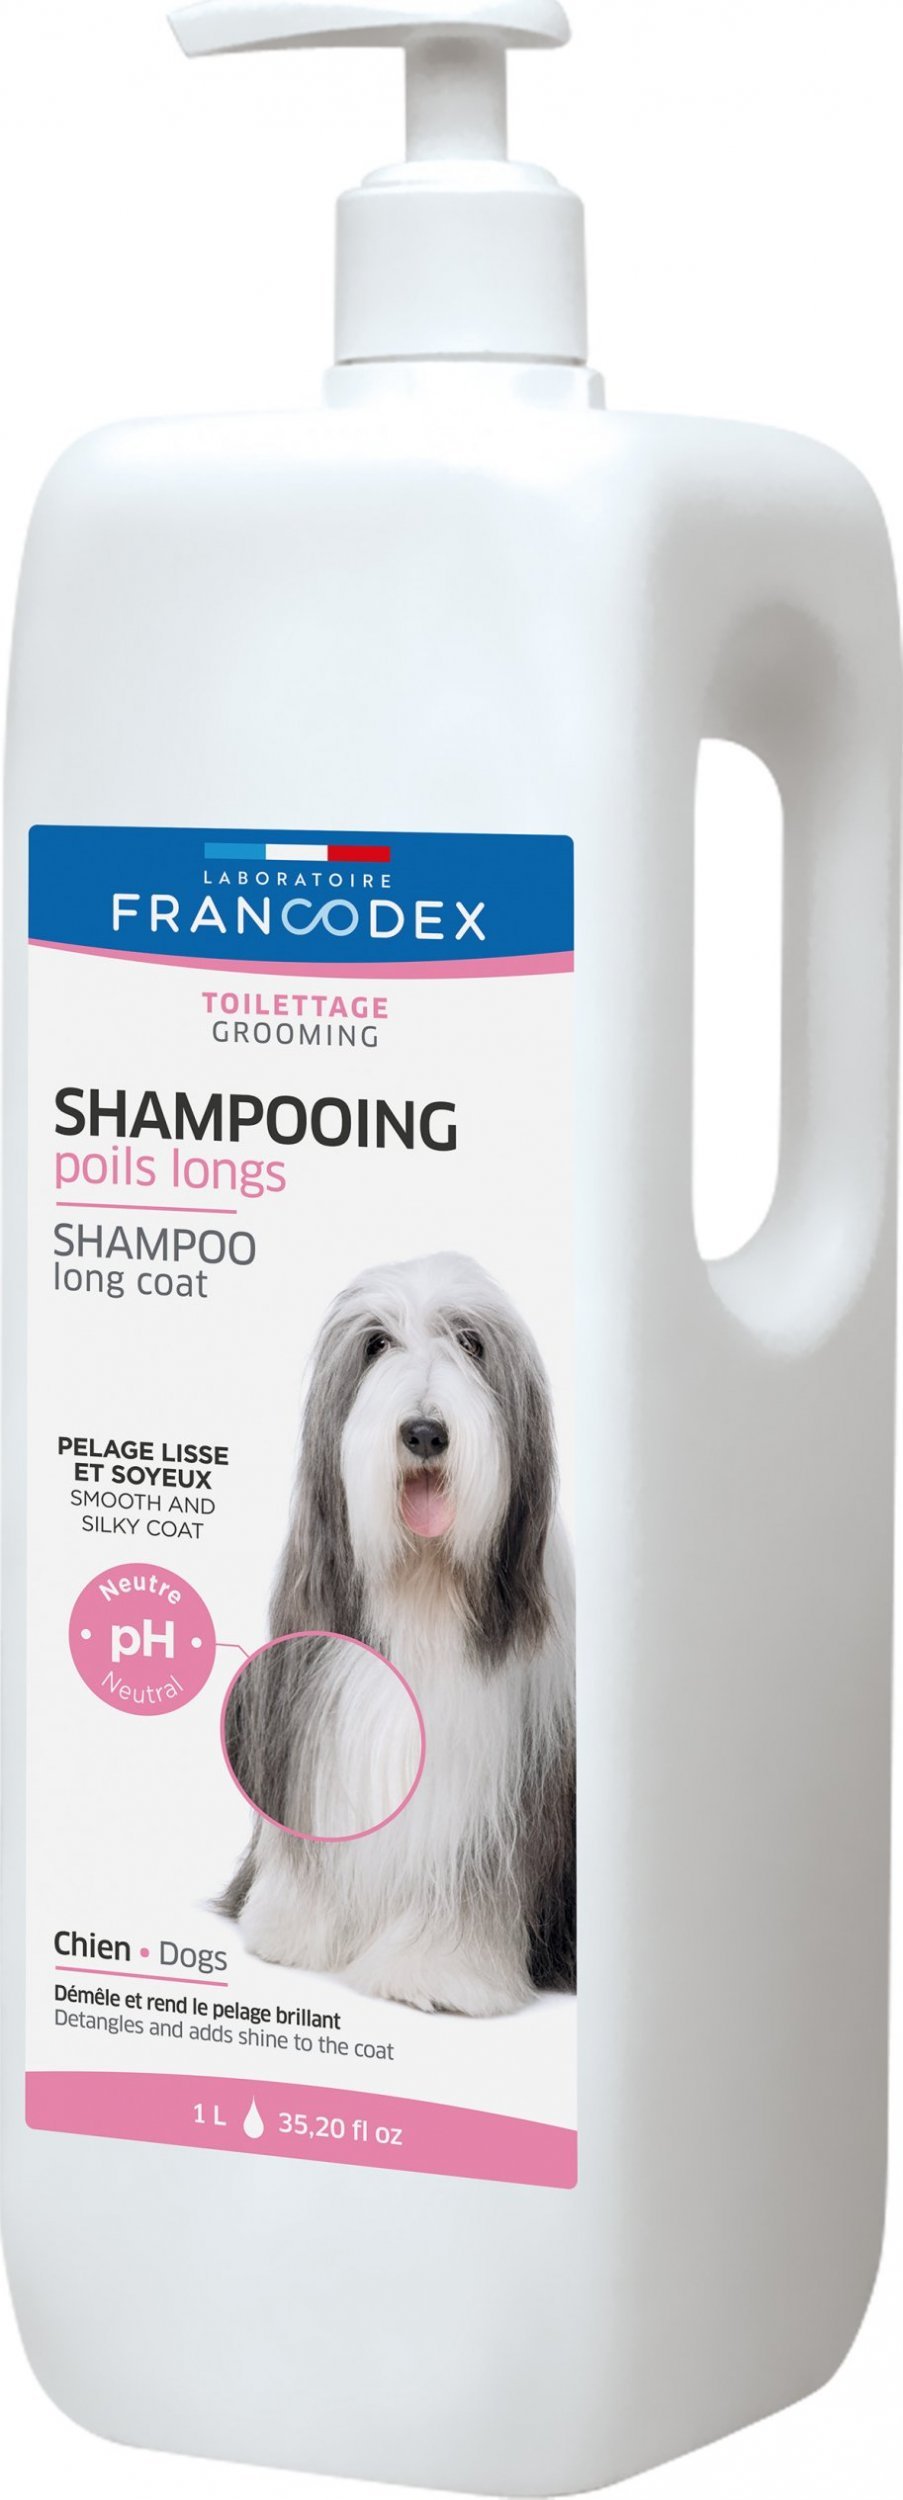 Șampon Francodex pentru păr lung - 1 l